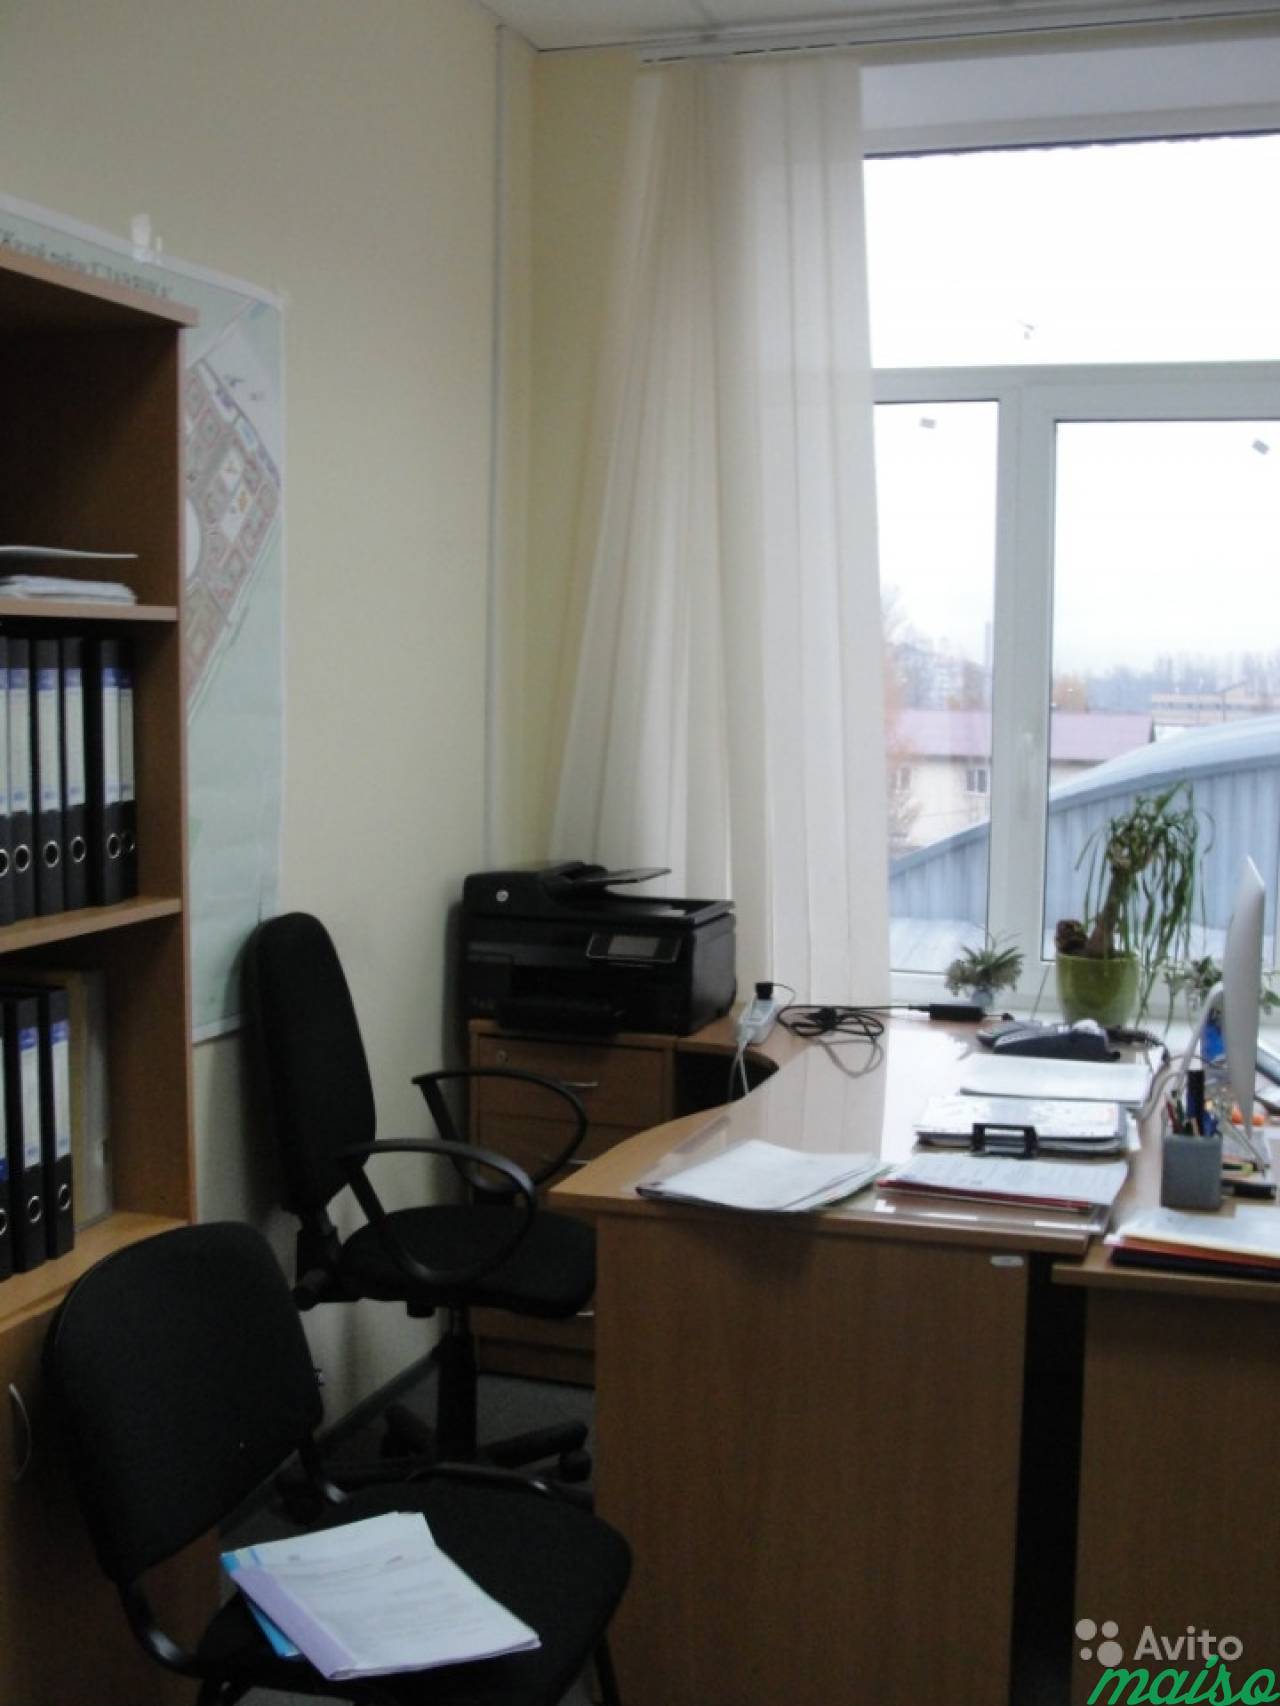 Офисное помещение в Славянке, от 12 м² до 500 м² в Санкт-Петербурге. Фото 11